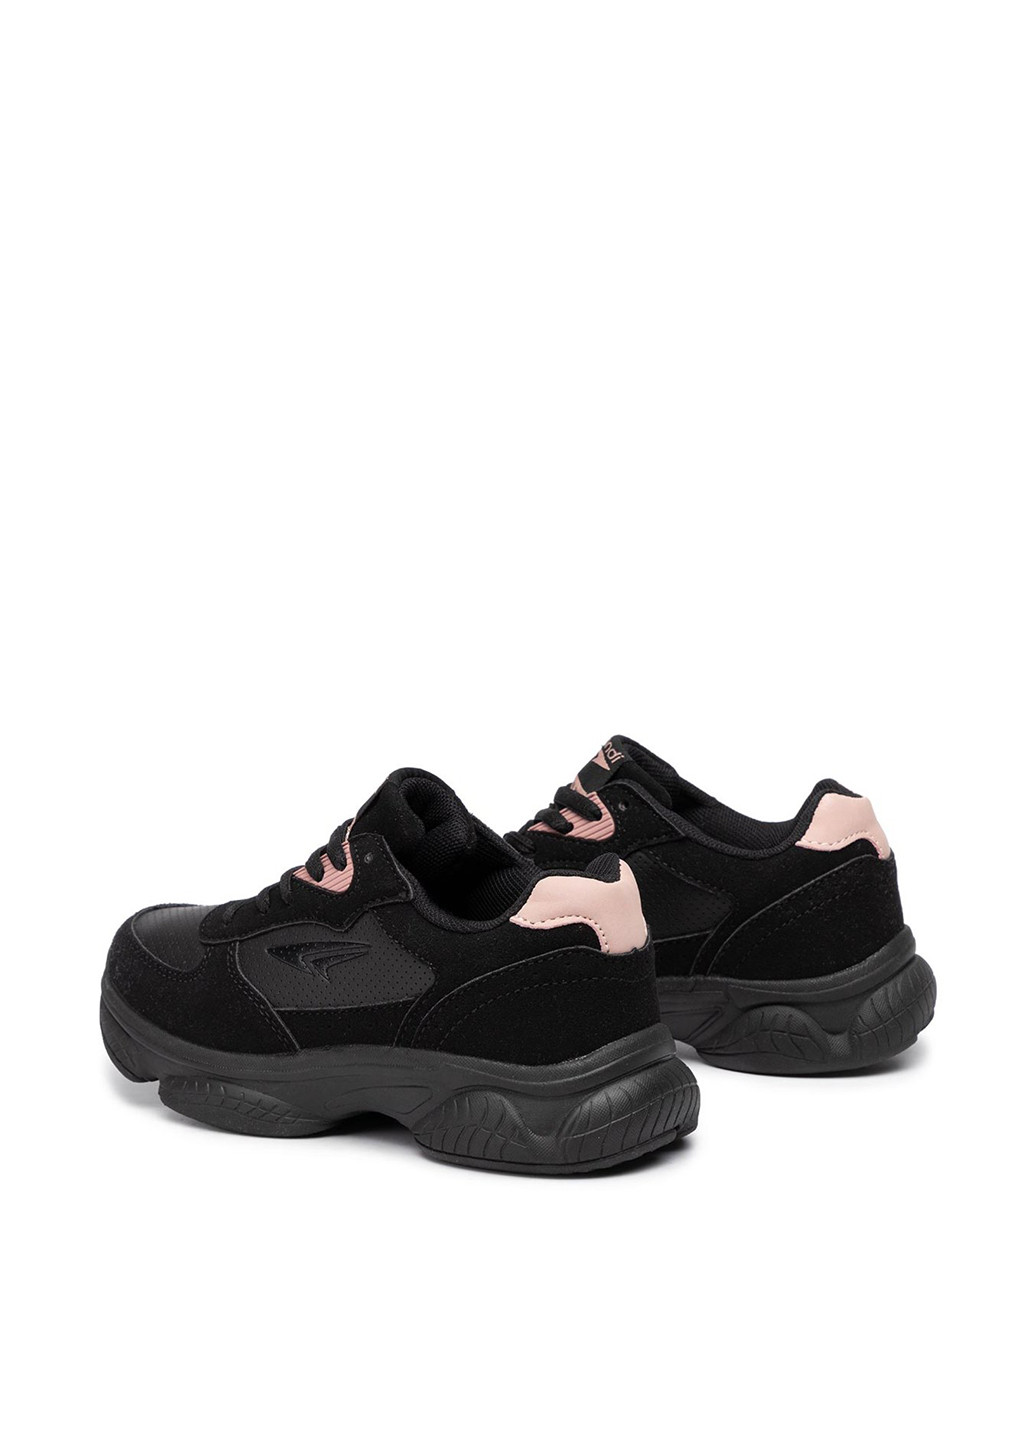 Черные демисезонные кросівки Sprandi CP40-8706J